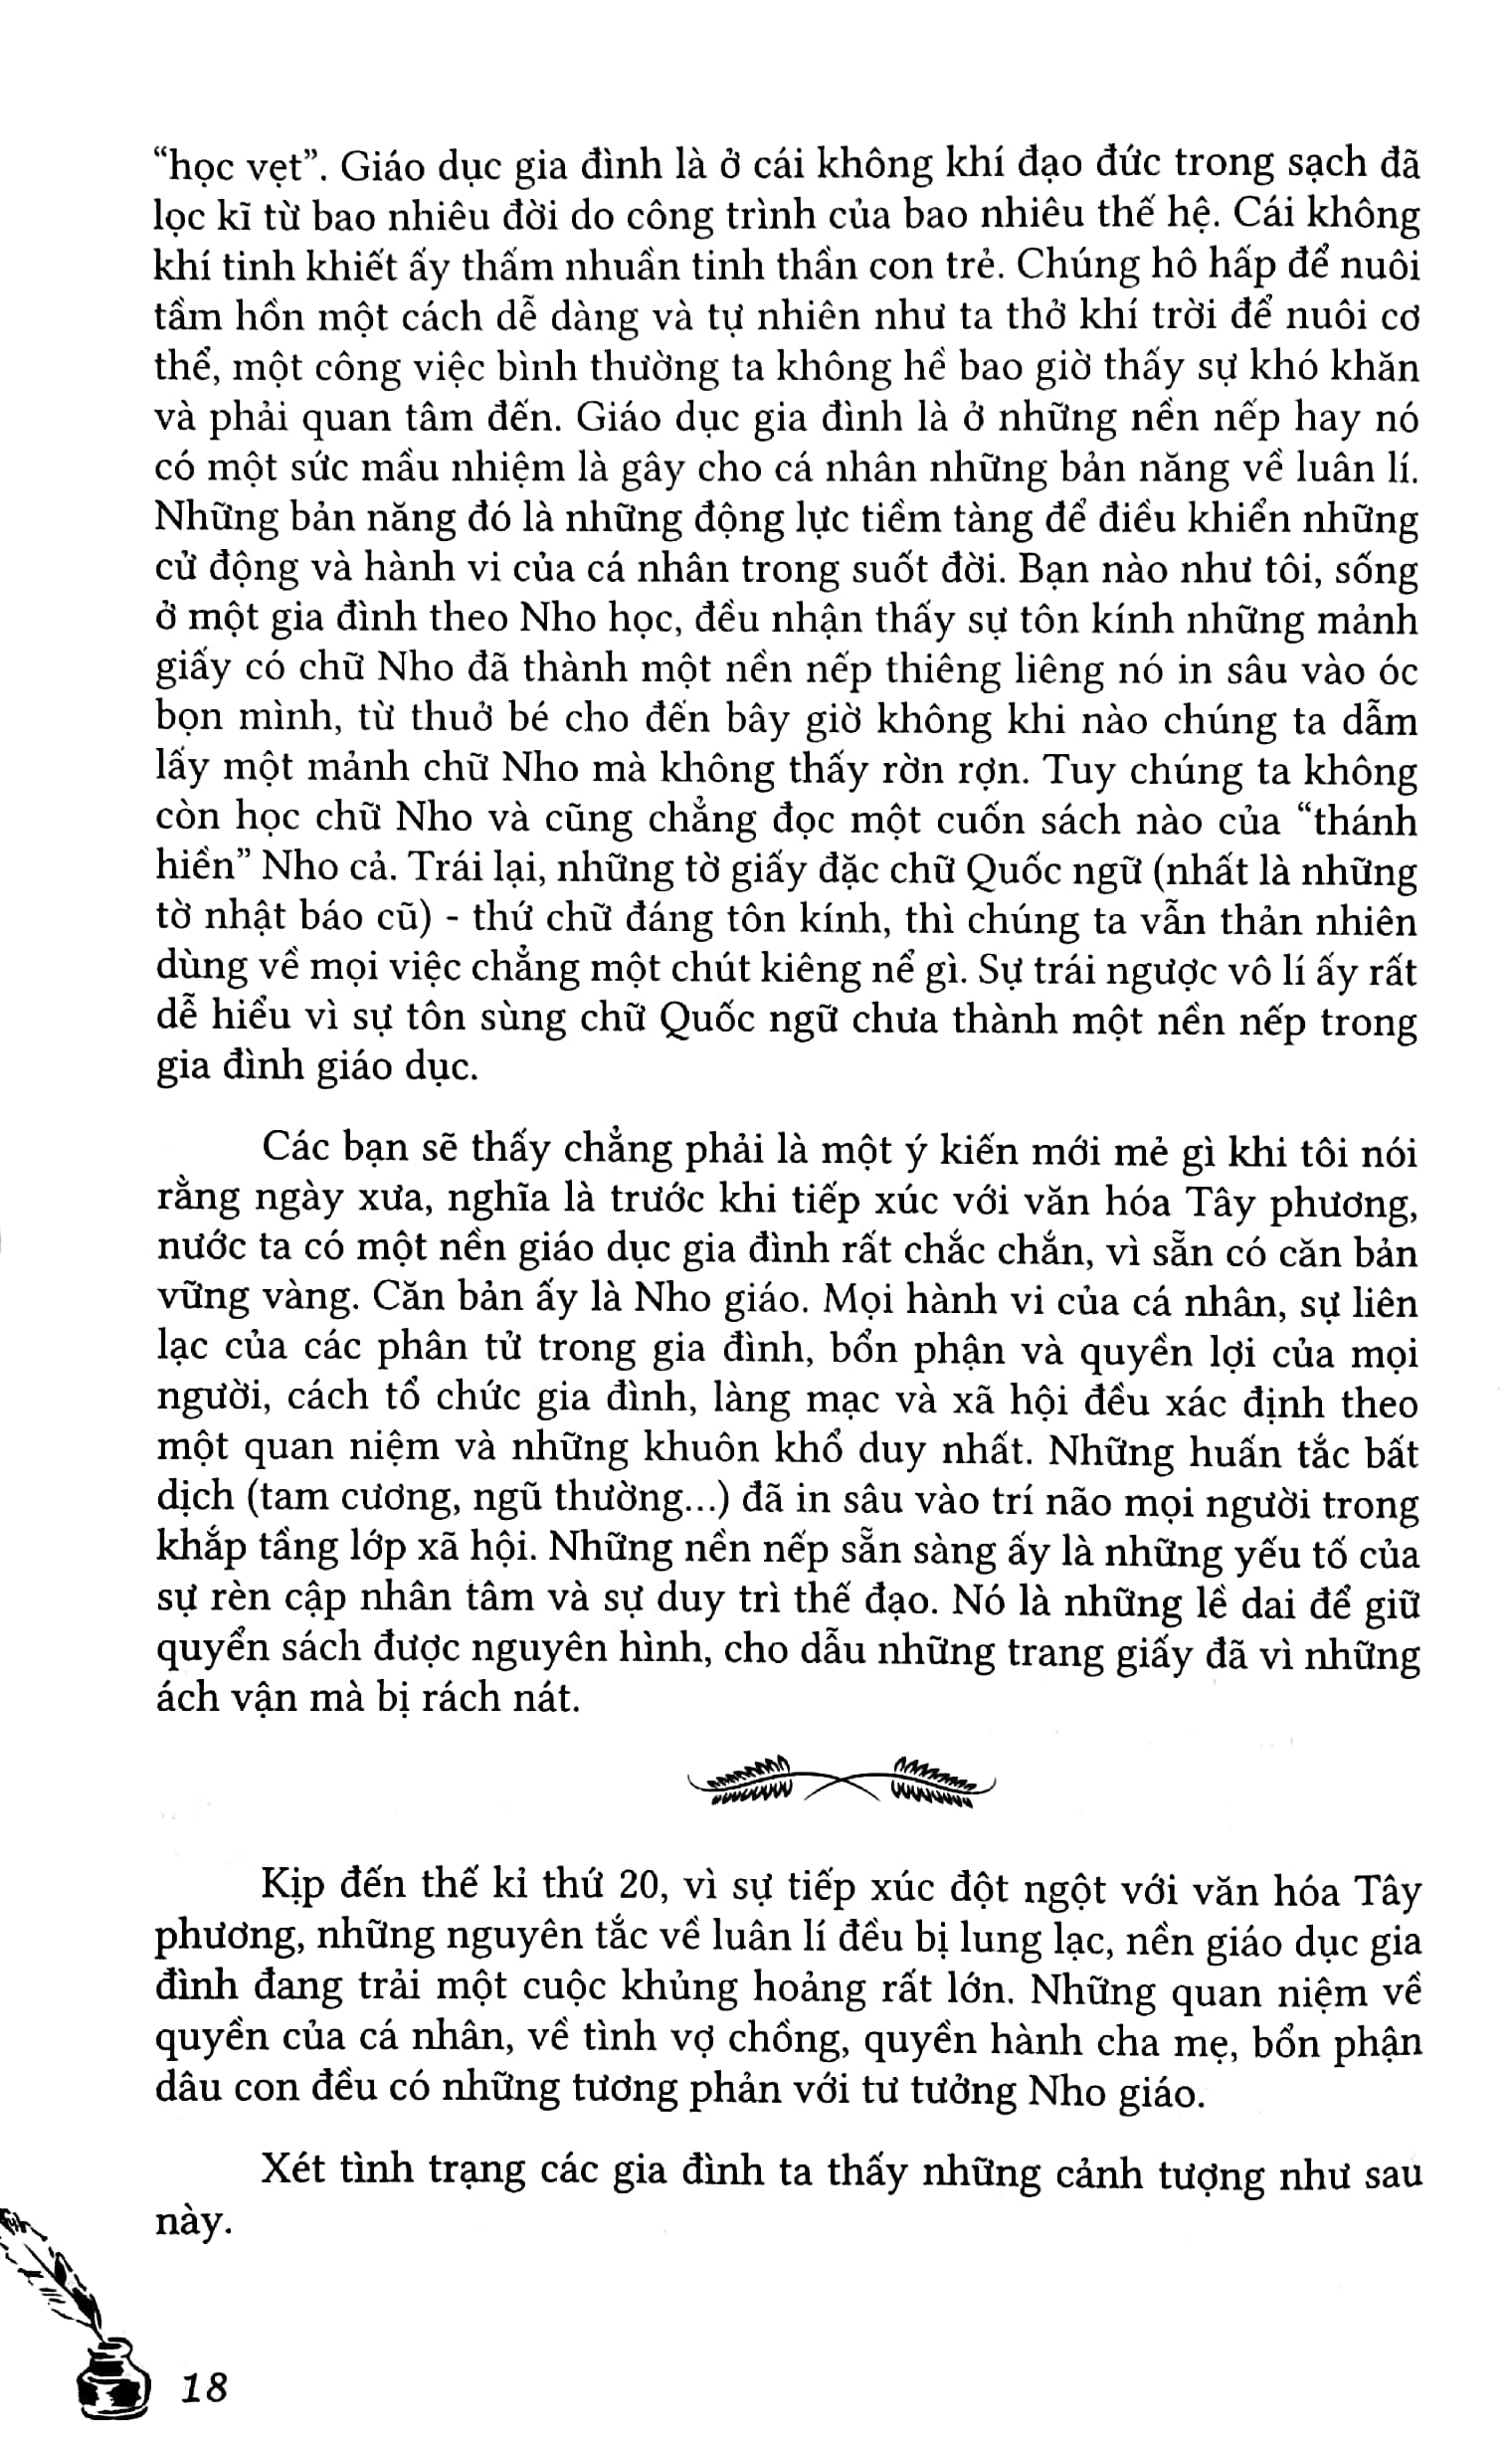 Tư Tưởng Giáo Dục Việt Nam - Trên Báo Thanh Nghị 1941 - 1945 PDF